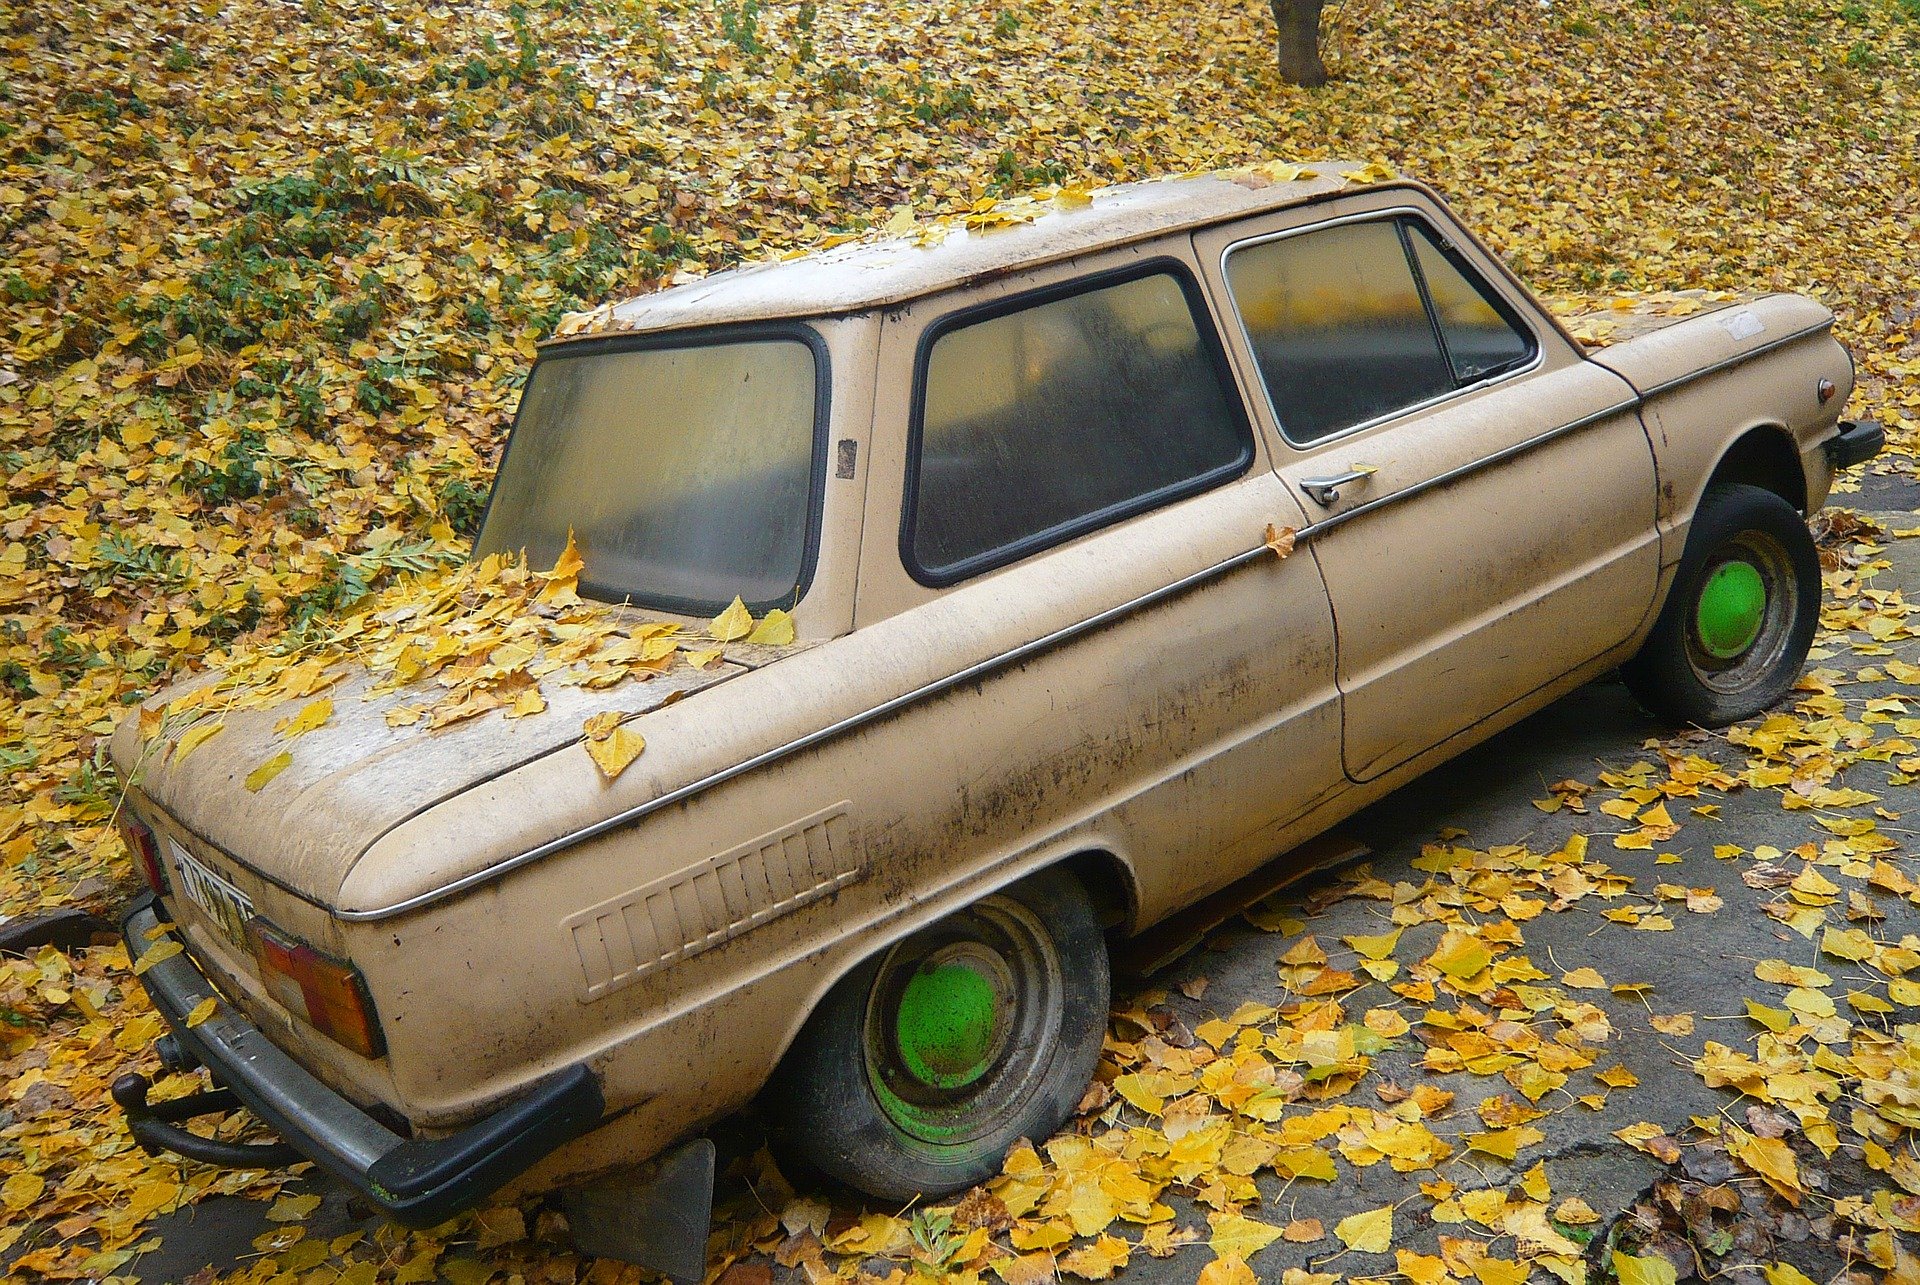 Old Car in Fall Season - VeteranCarDonations.org